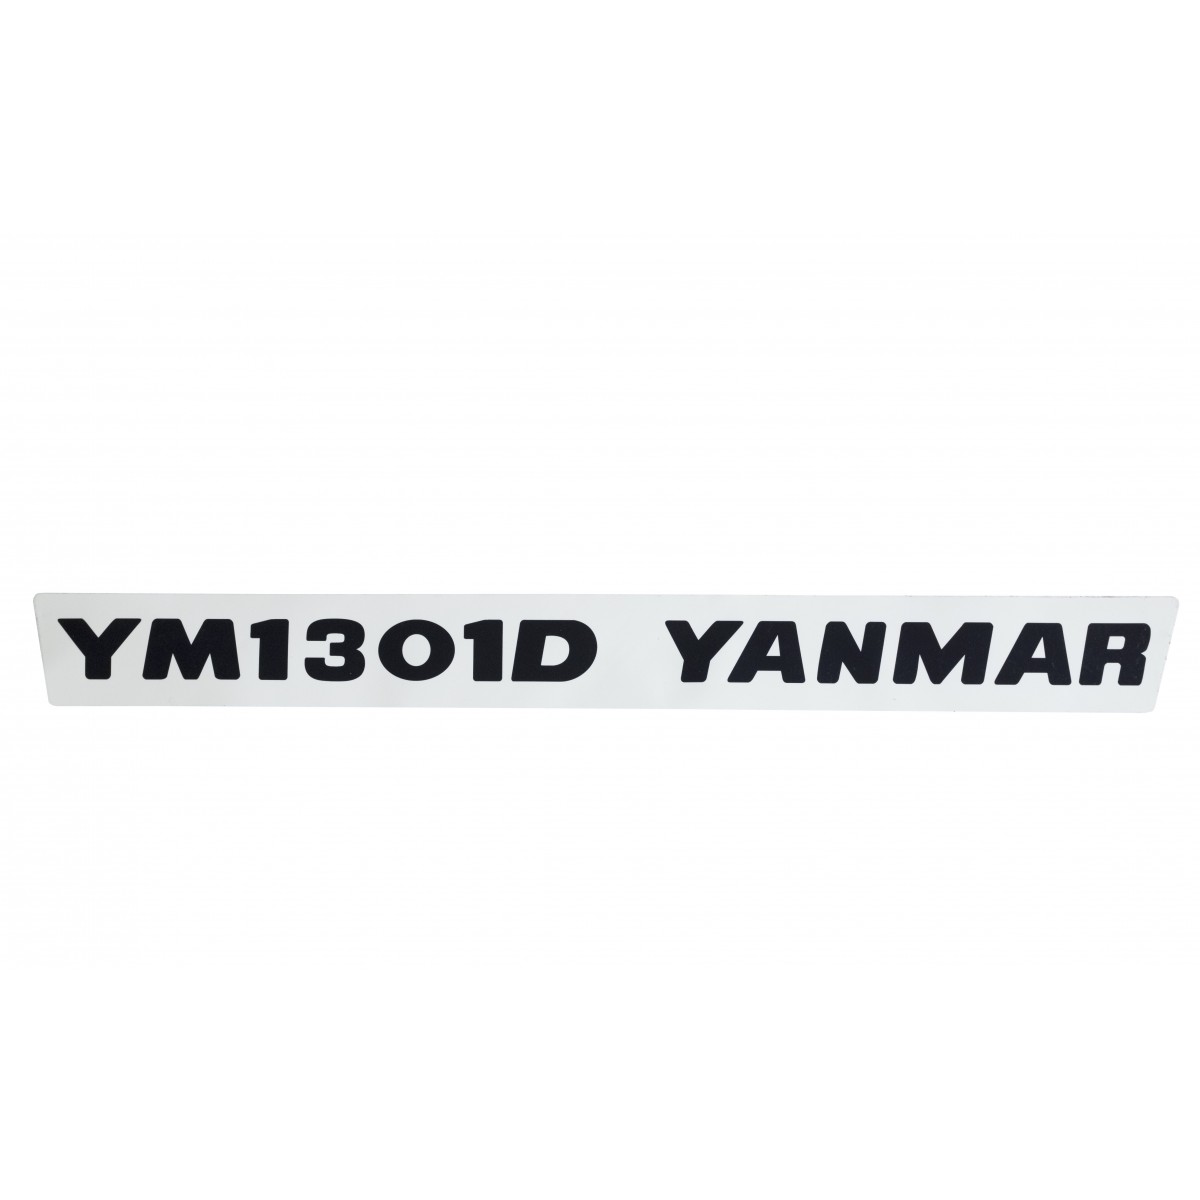 Sticker (1) Yanmar YM1301D